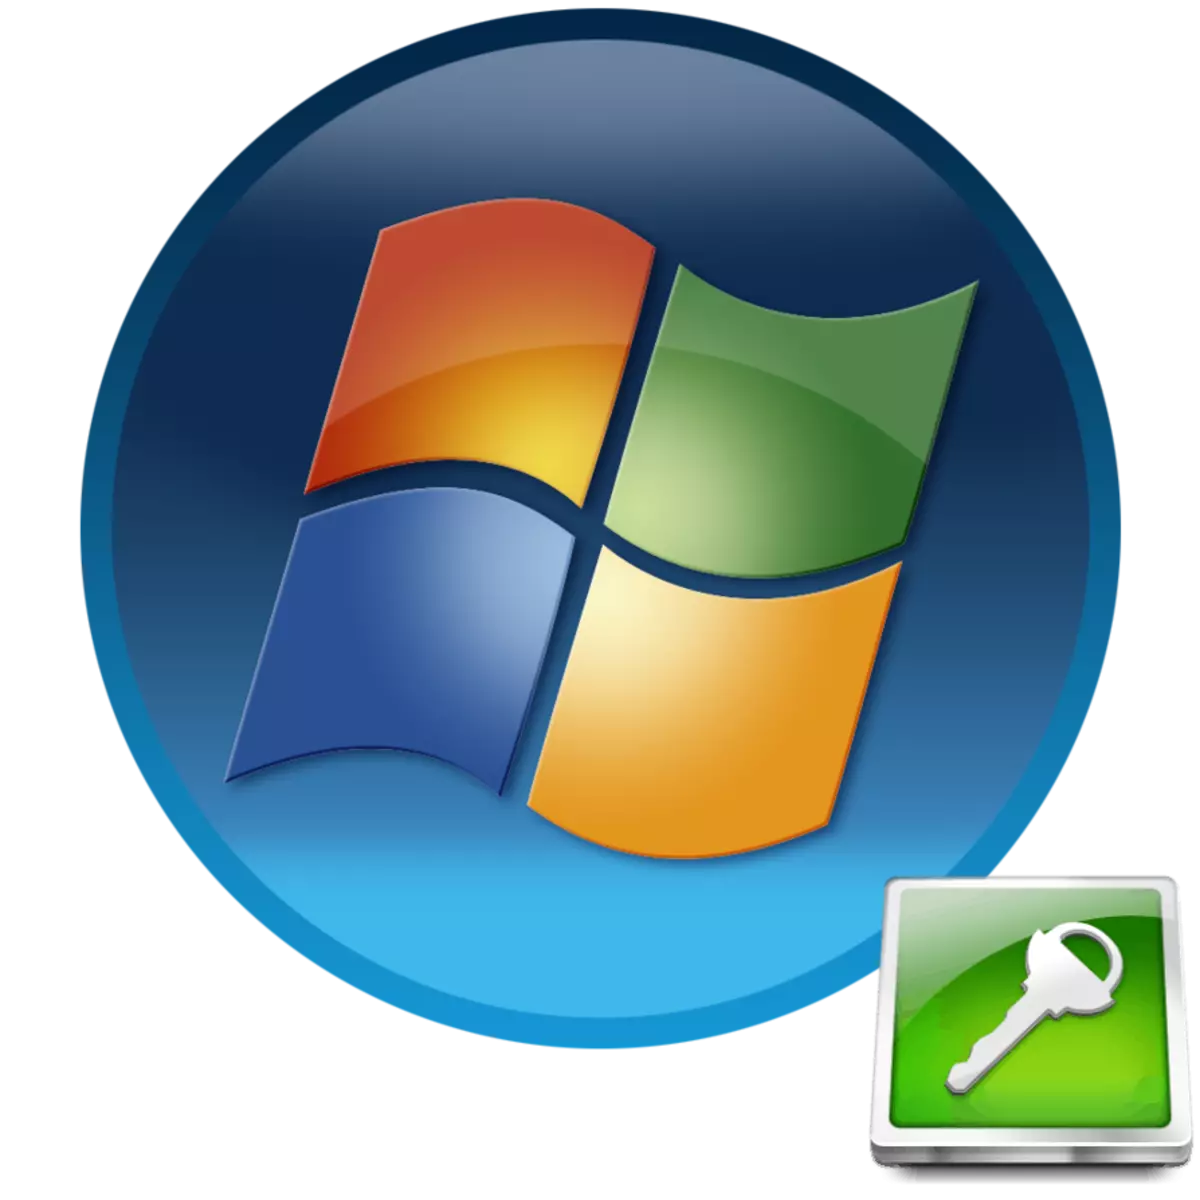 Kako saznati lozinku na sustavu Windows 7, ako ste zaboravili